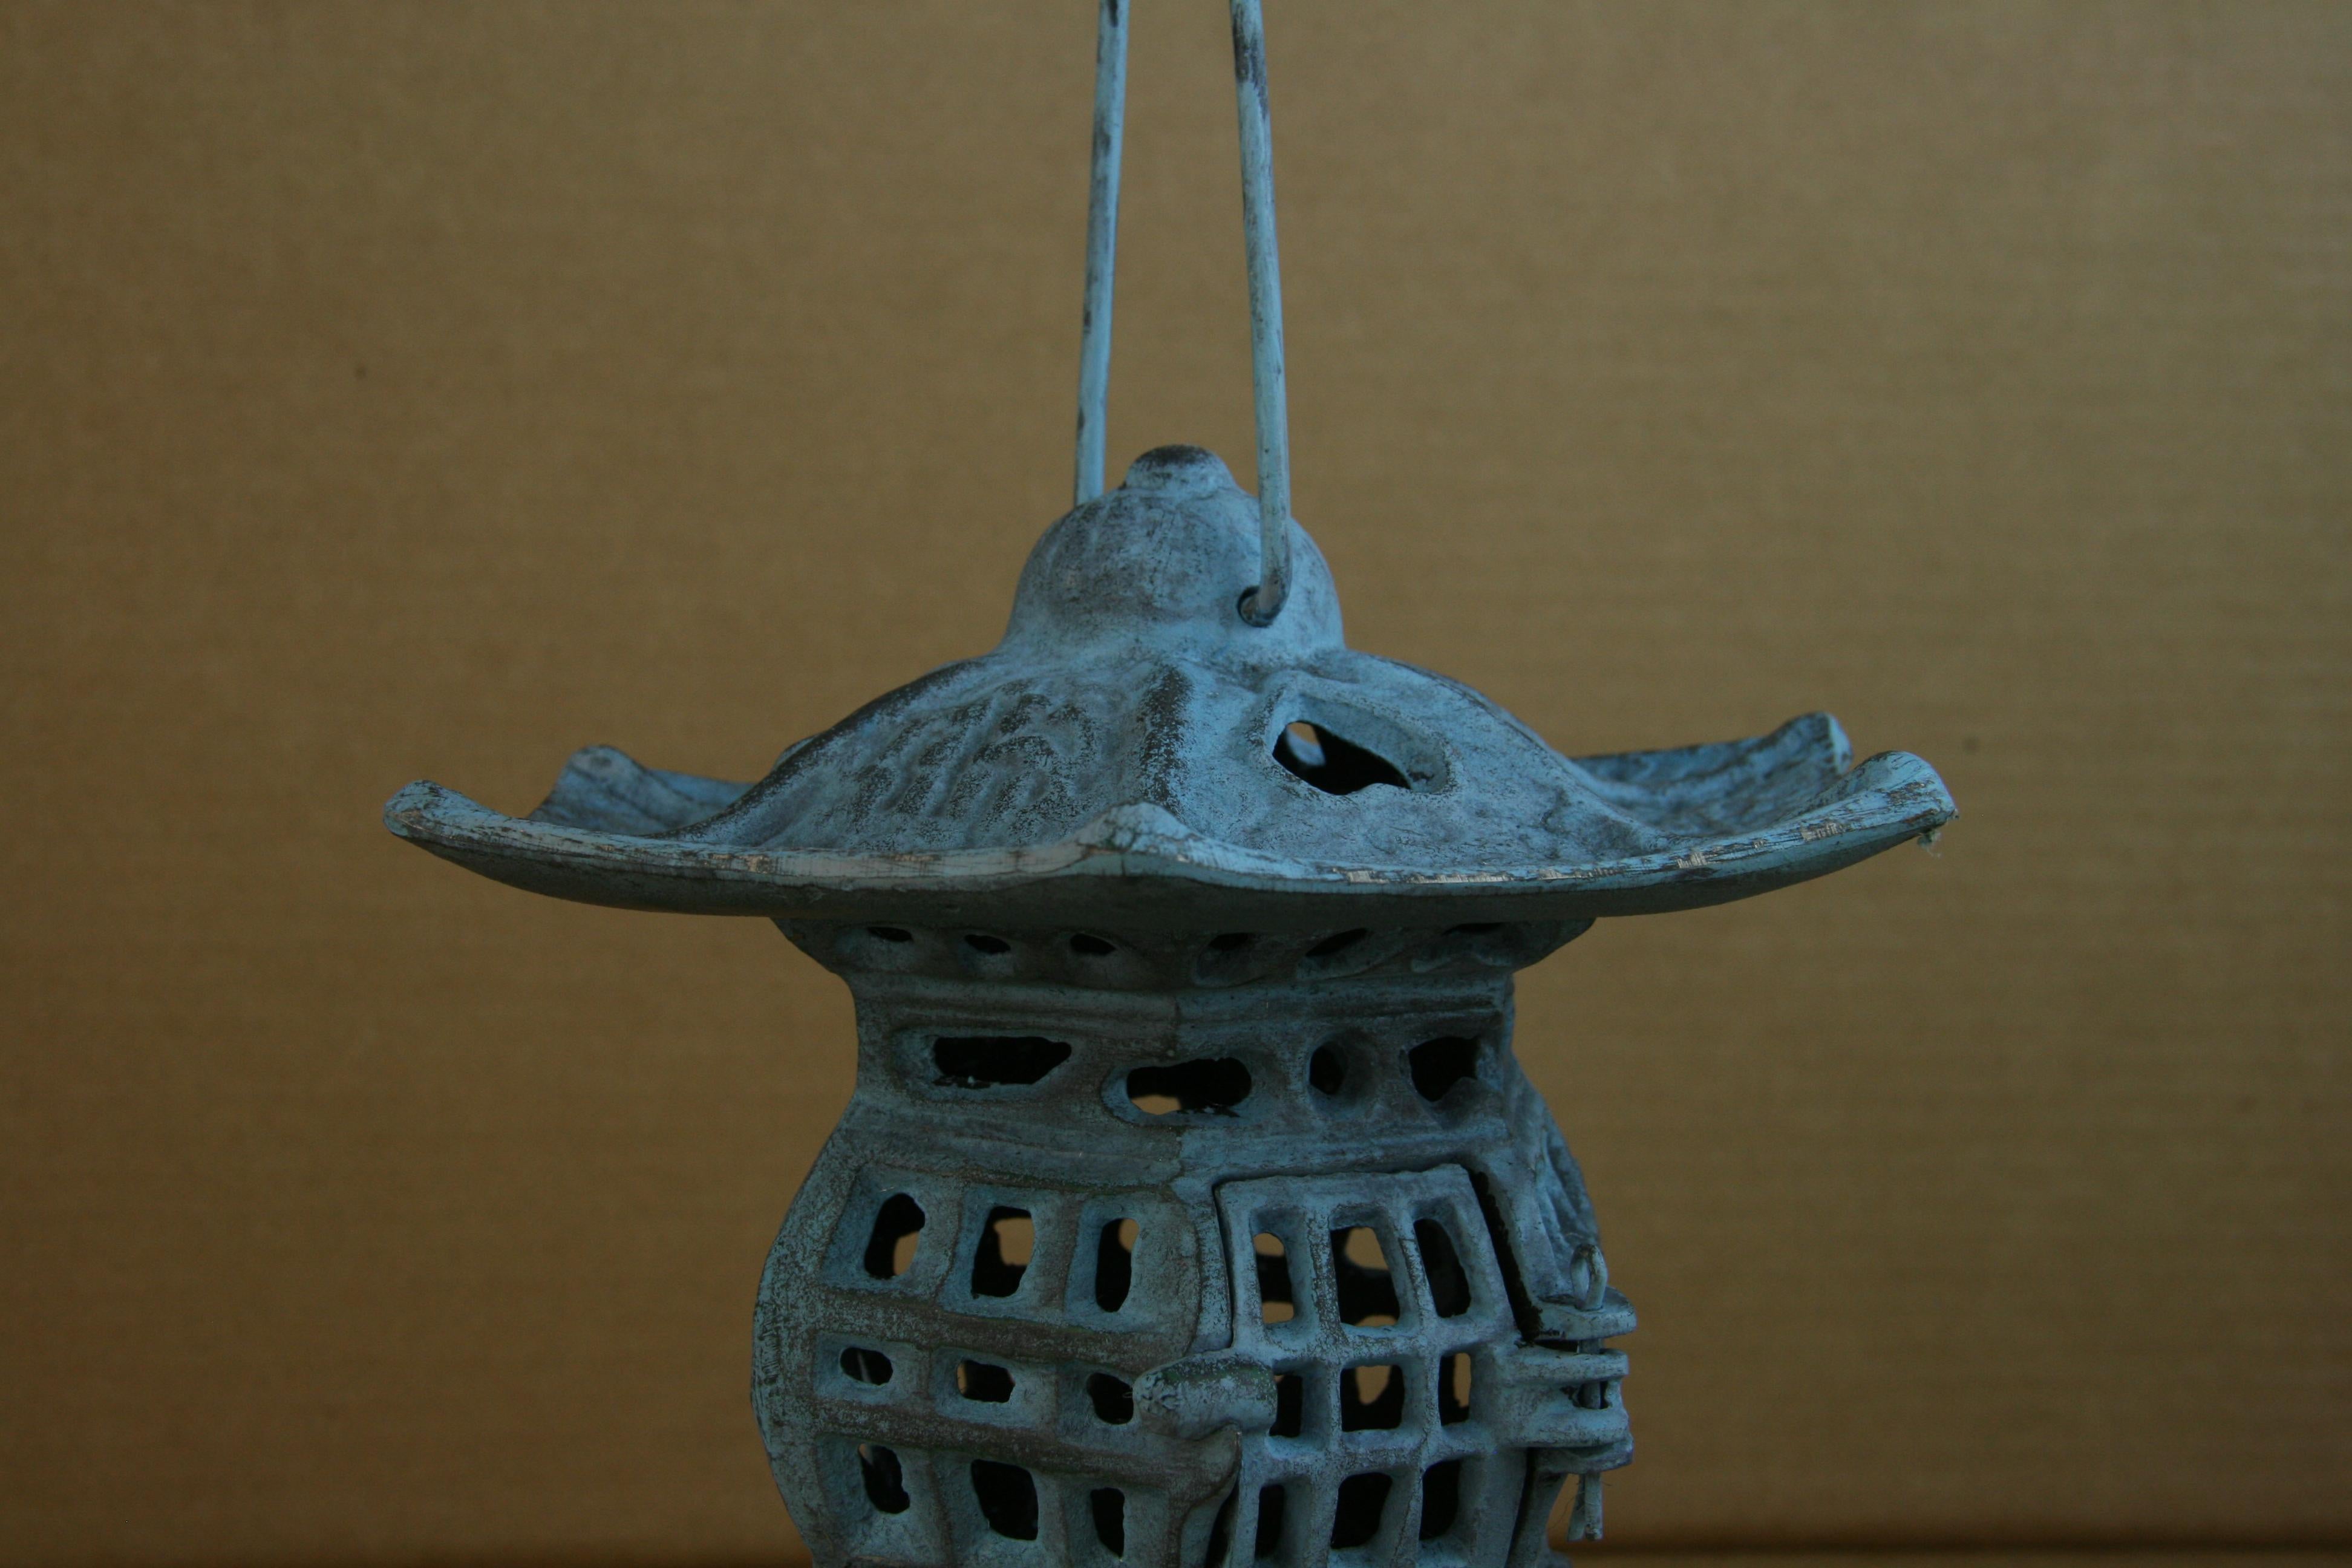 Japanese Robin Blue Heart Pagoda Garden Candle Lantern For Sale 1